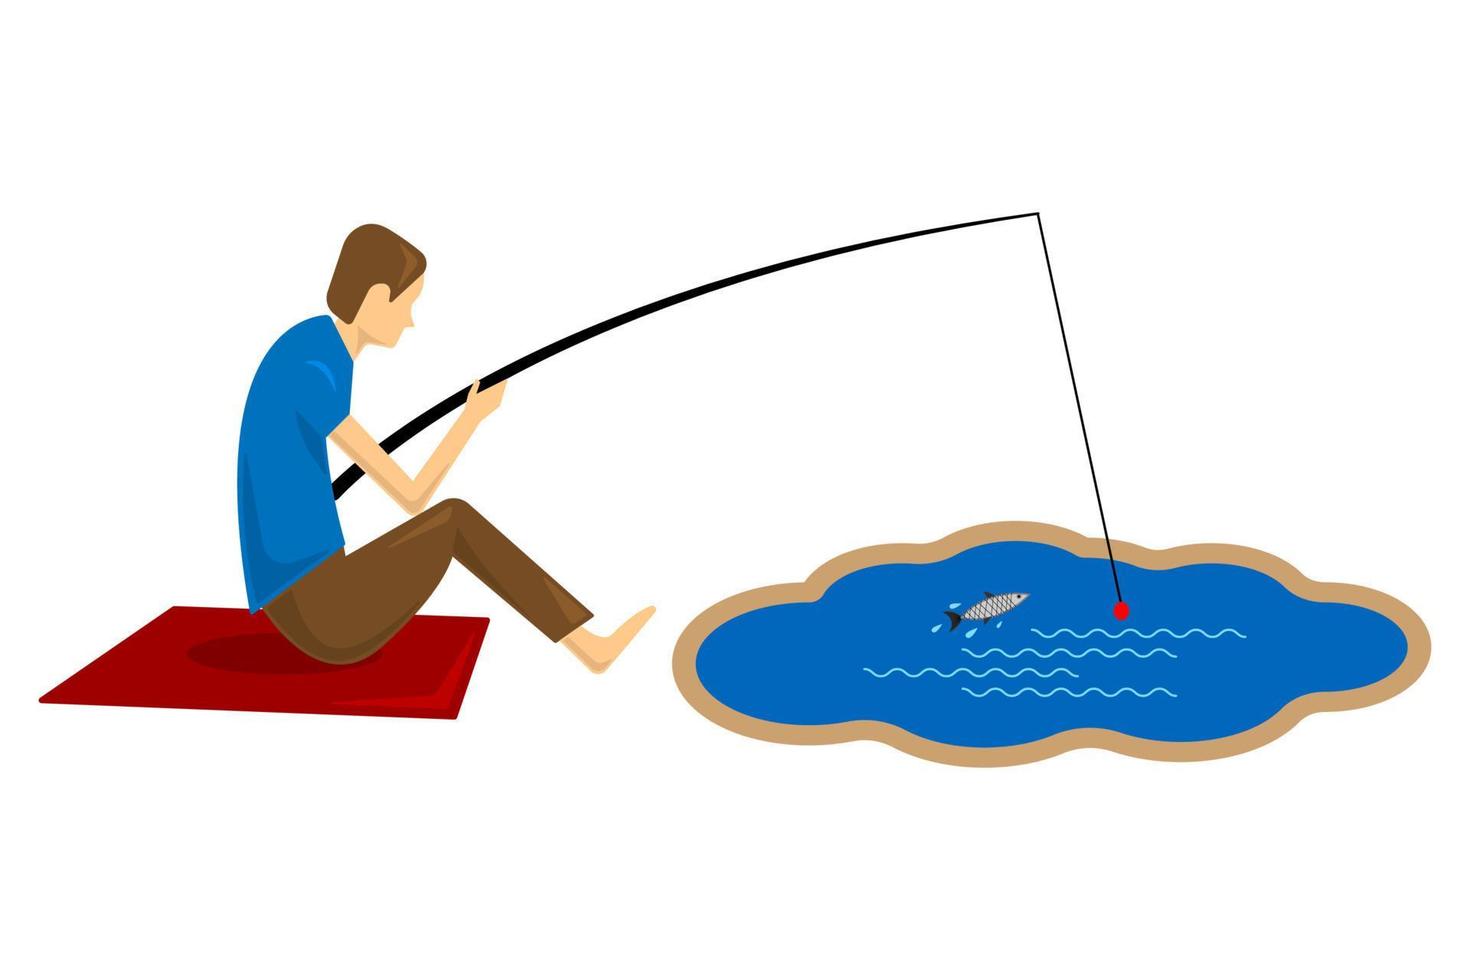 pescador sentado com vara de pescar estilo cartoon plana vetor